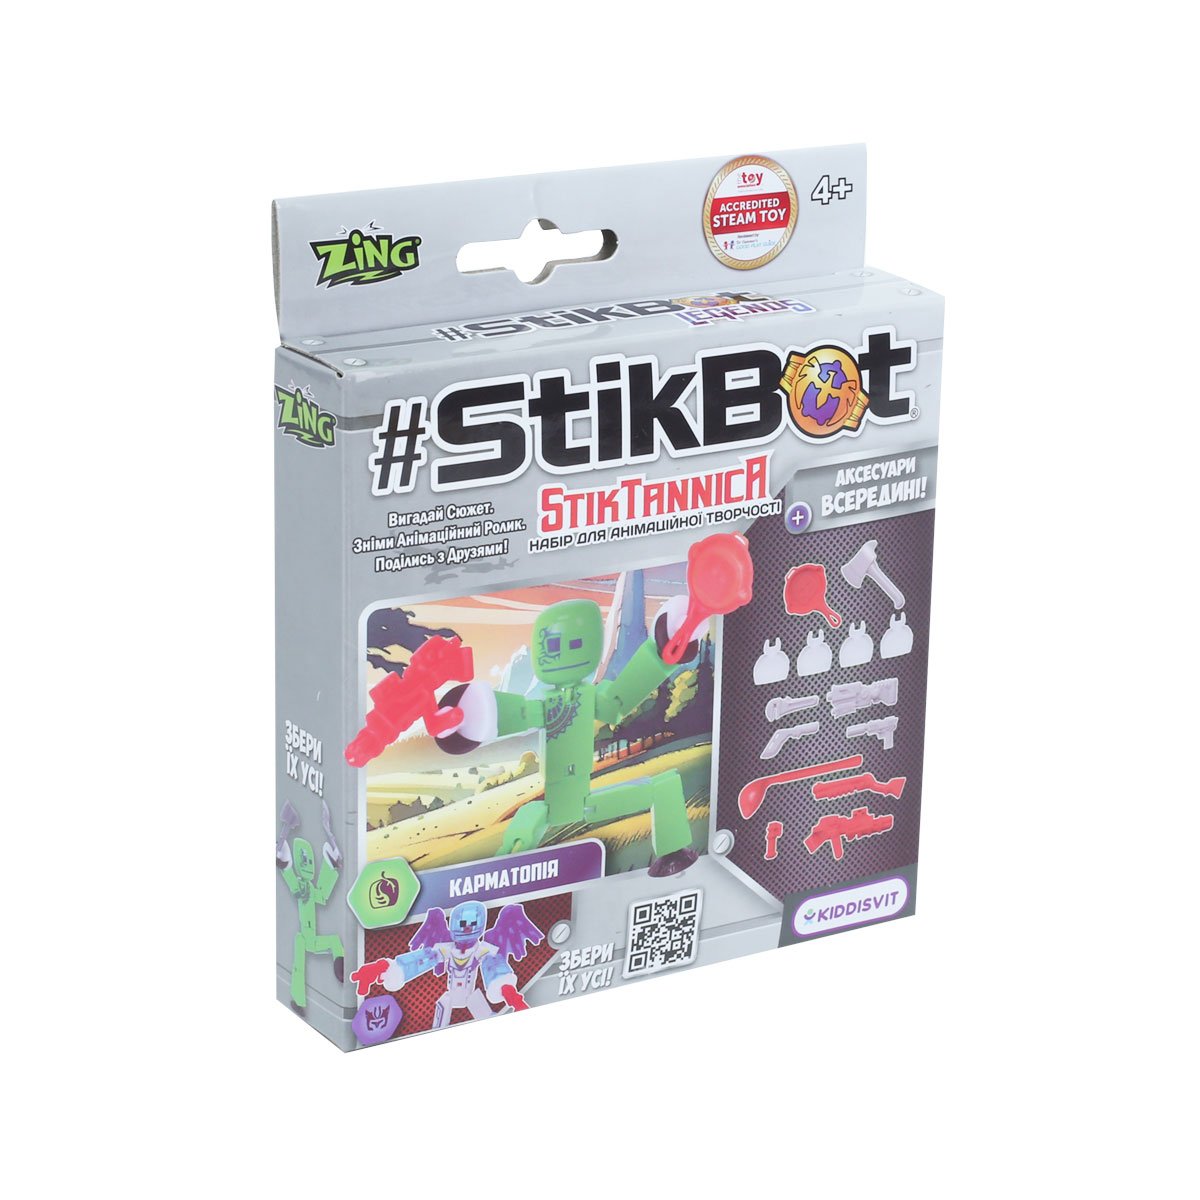 Игровой набор для анимационного творчества Stikbot StikTannica Карматопия (SB270G_UAKD) - фото 3